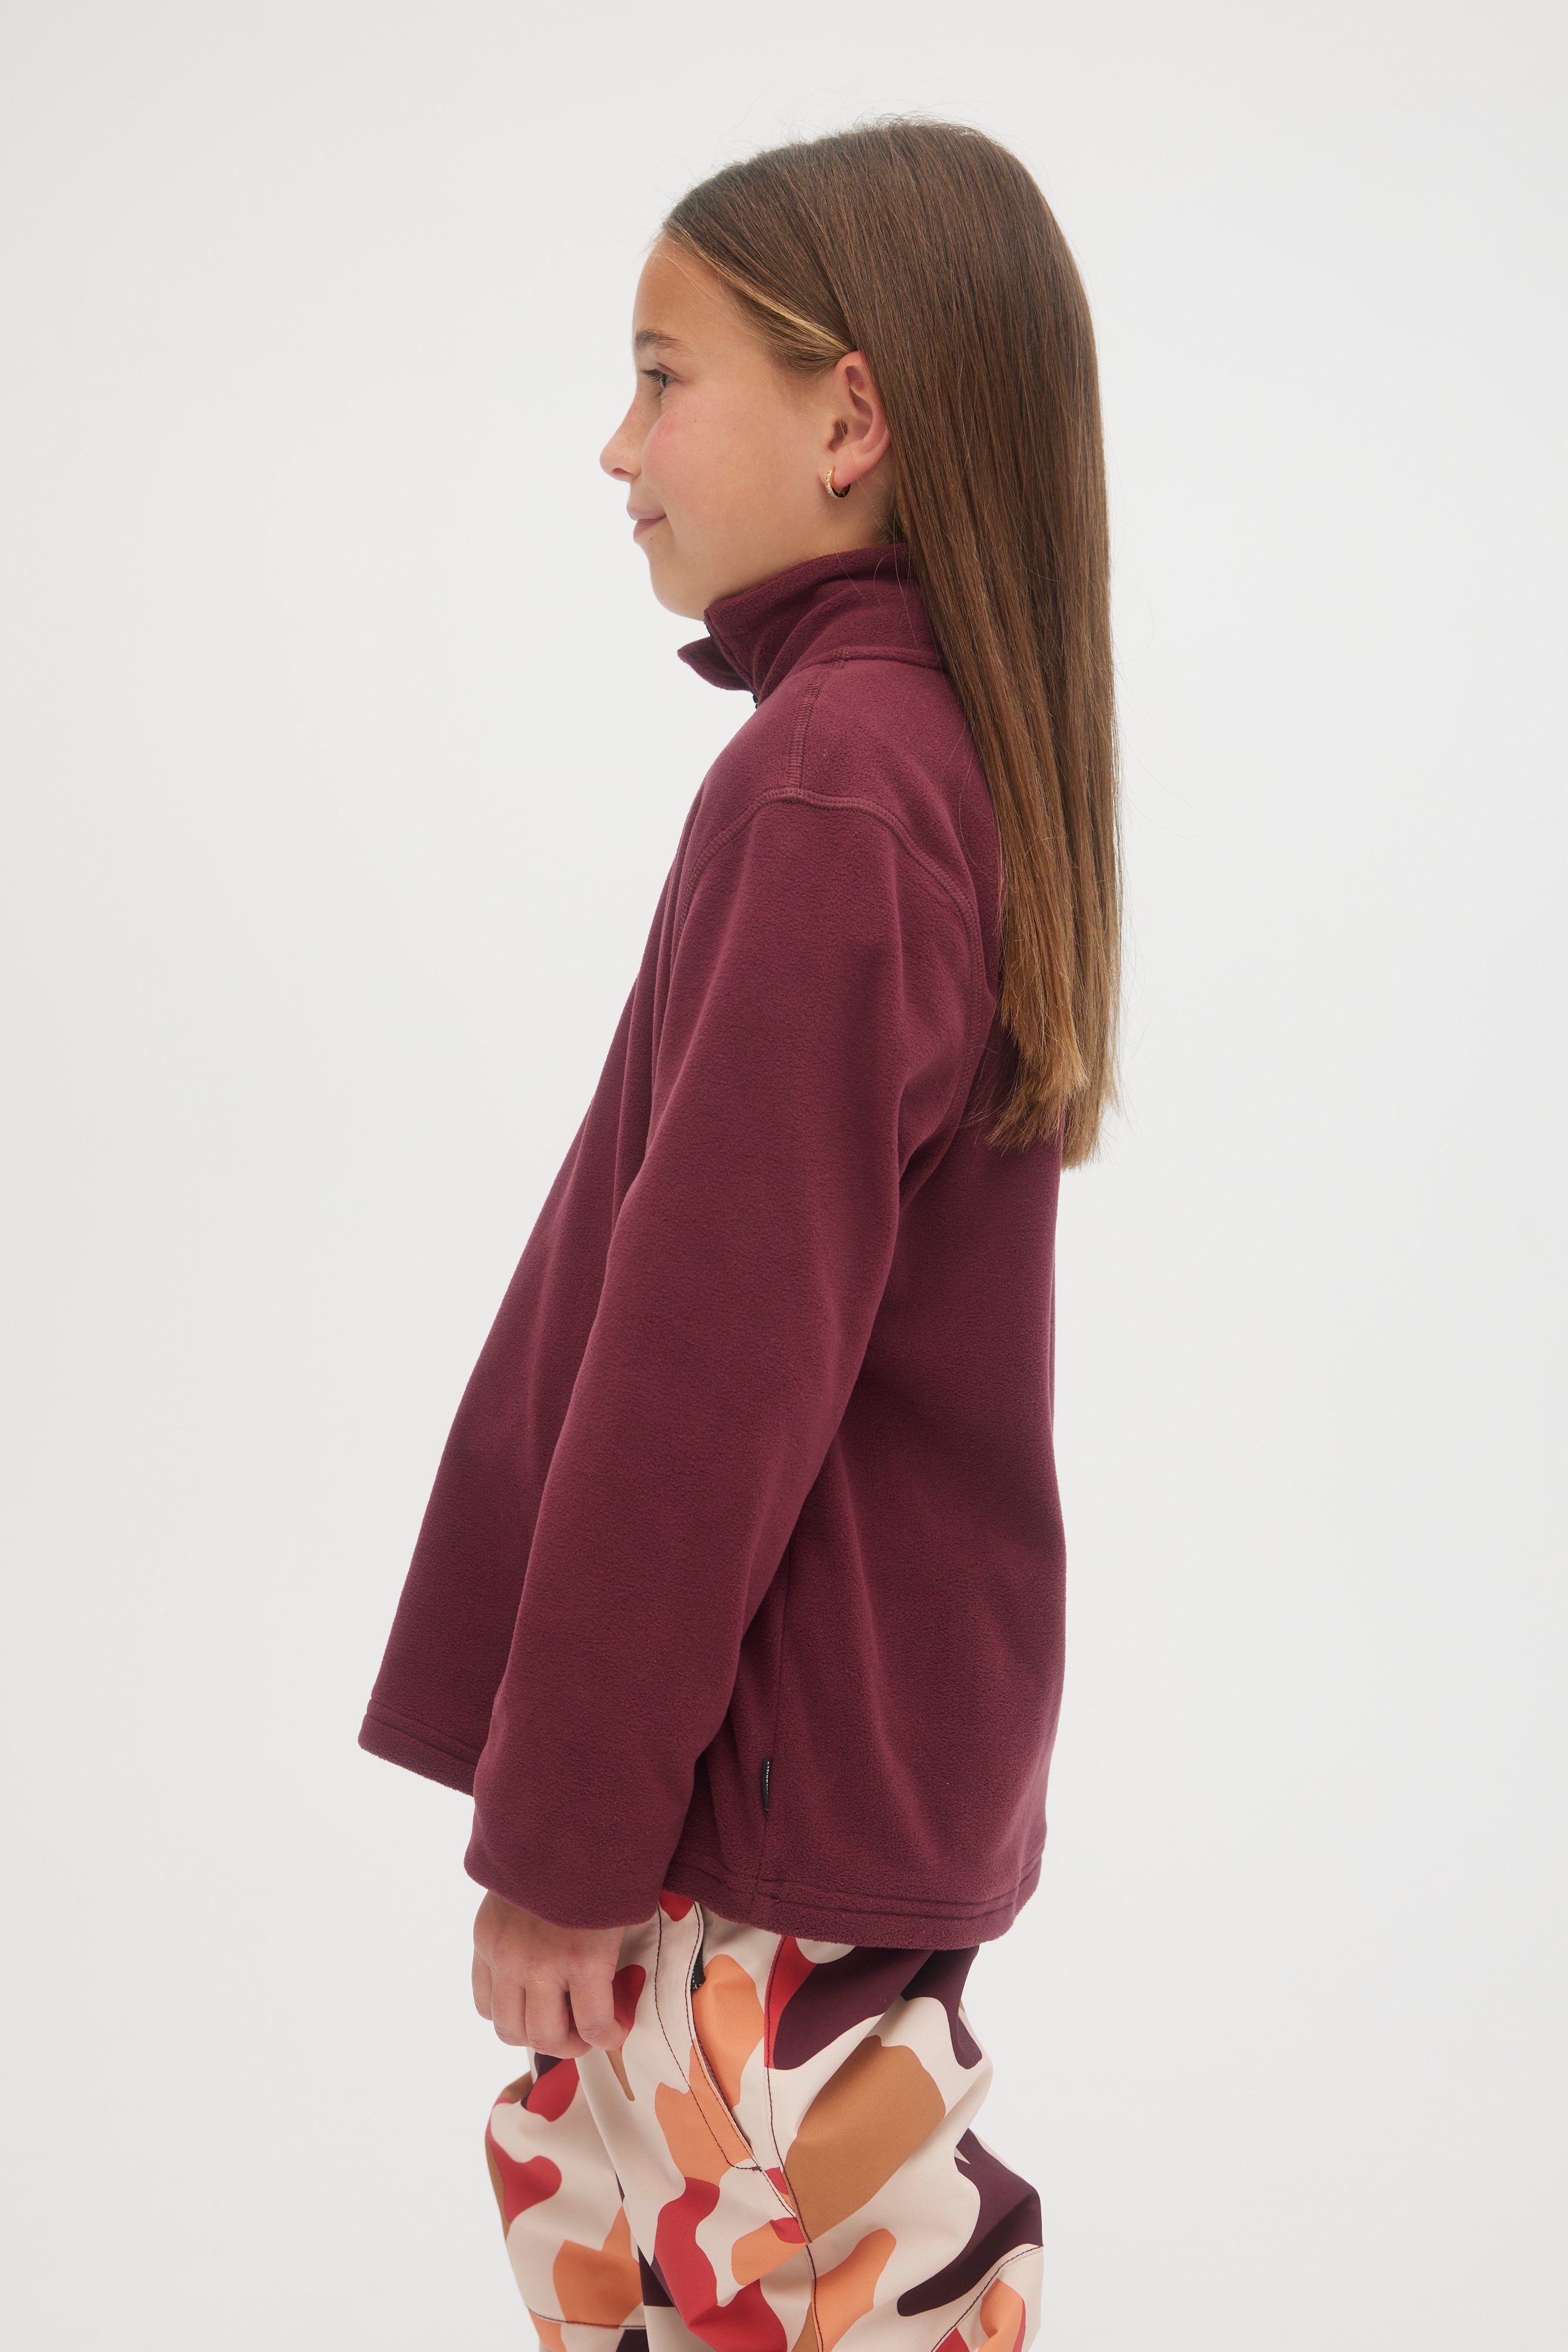 Girls Sweaters, Hoodies, Fleece & Jackets – O'NEILL